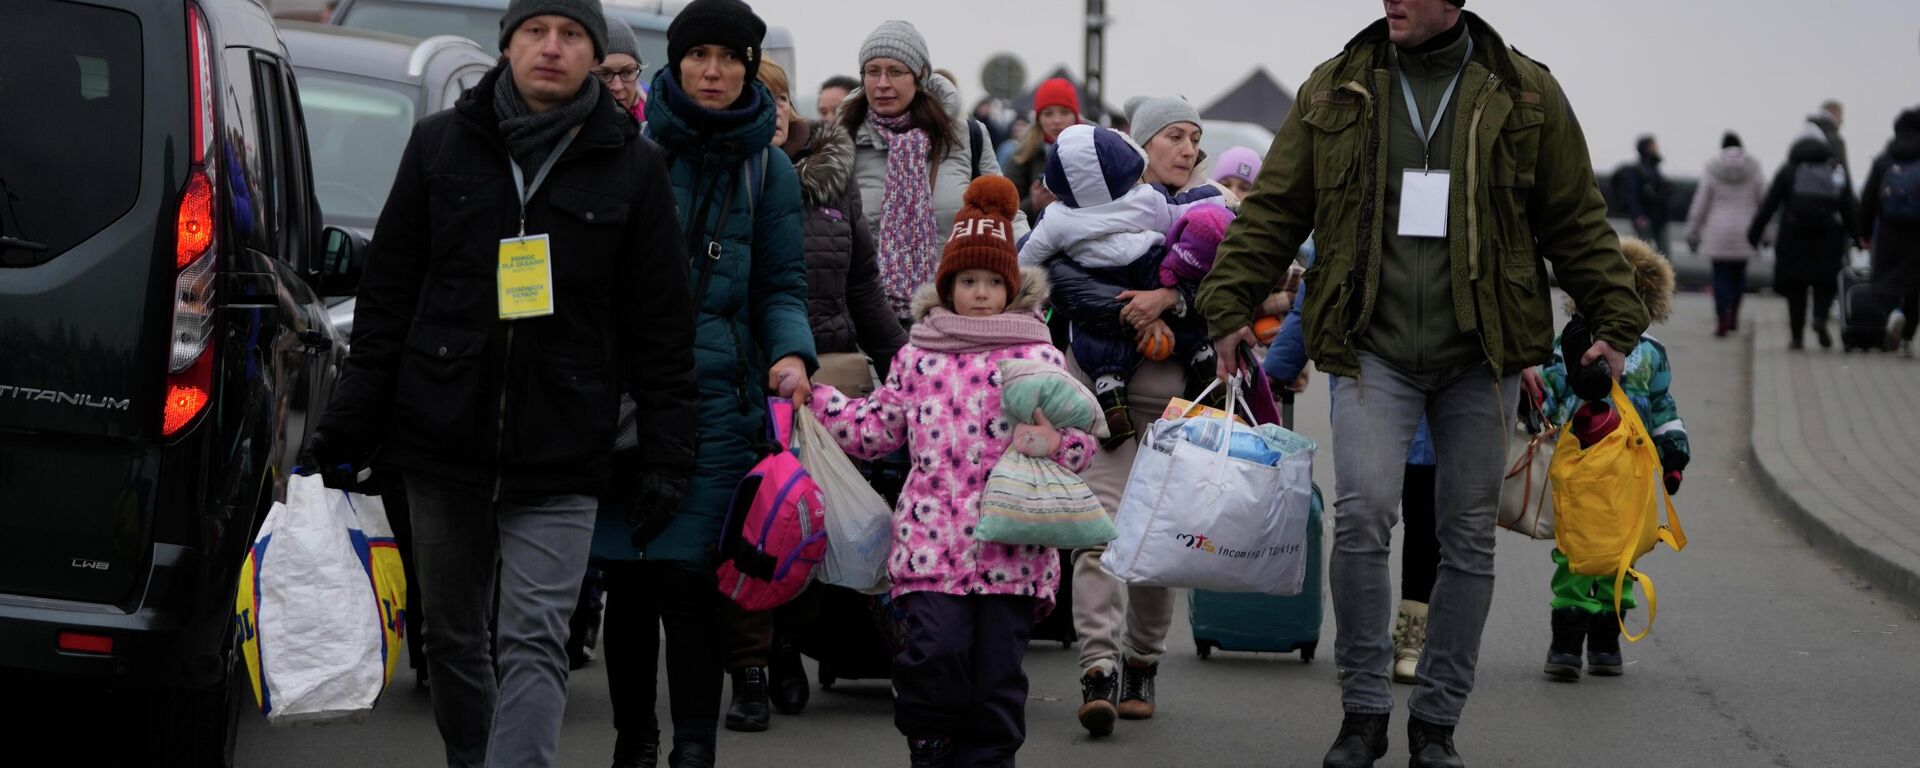 Люди, бегущие из Украины, покидают погранпереход в Медыке, Польша - Sputnik Азербайджан, 1920, 05.03.2022